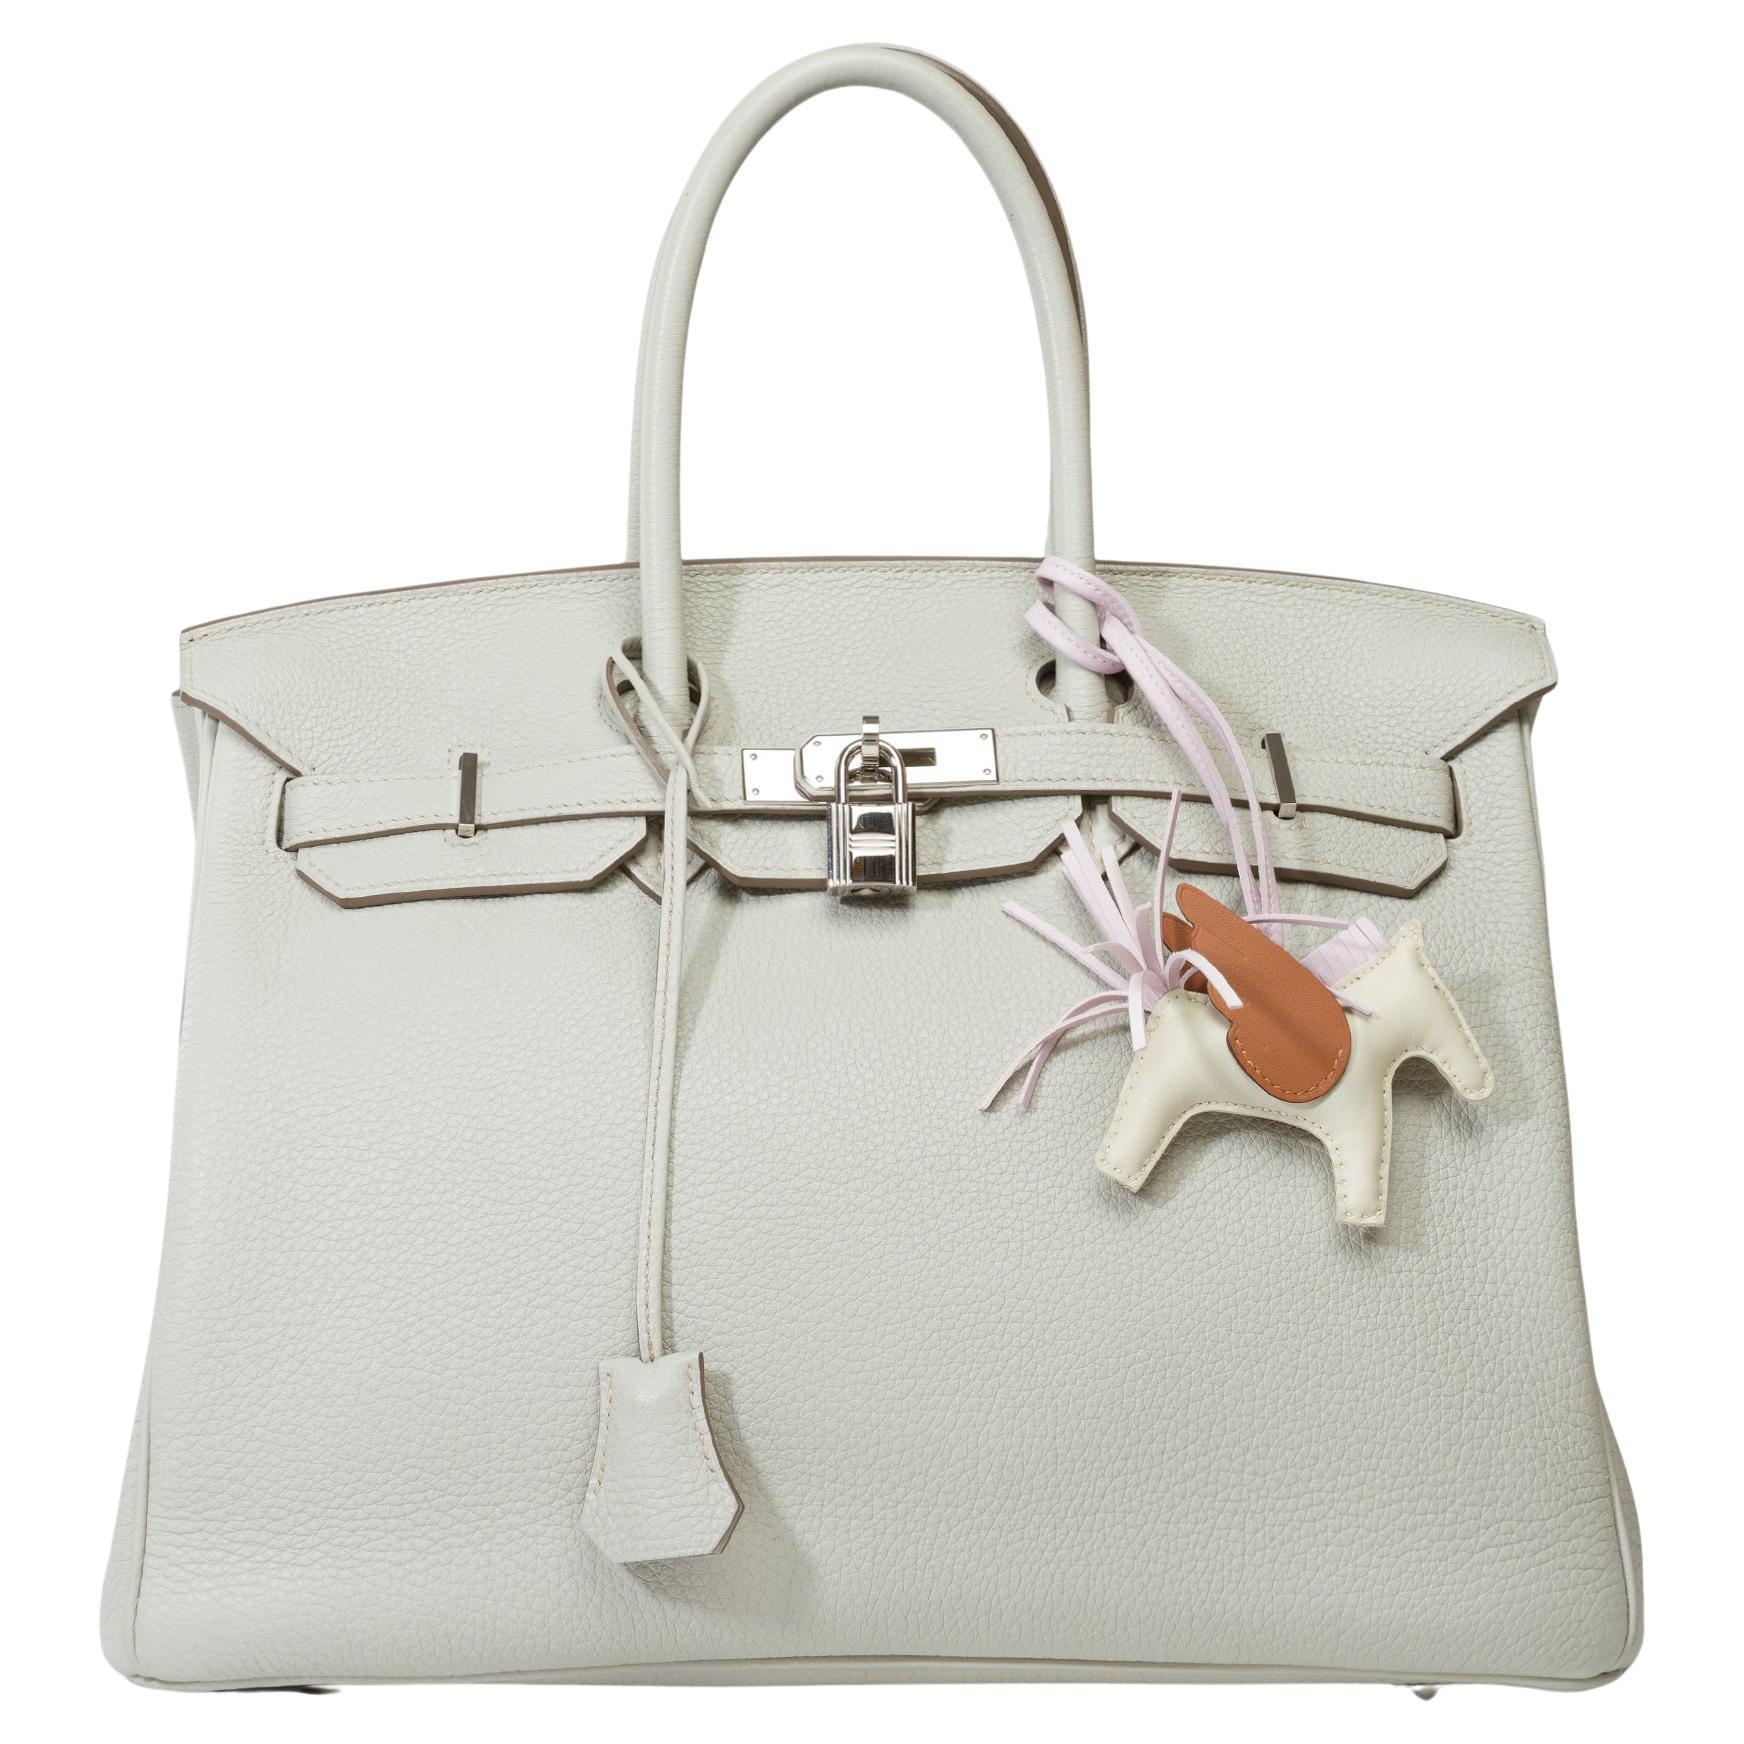 Amazing Hermès Birkin 35 handbag in Gris Perle Togo Calf leather, SHW